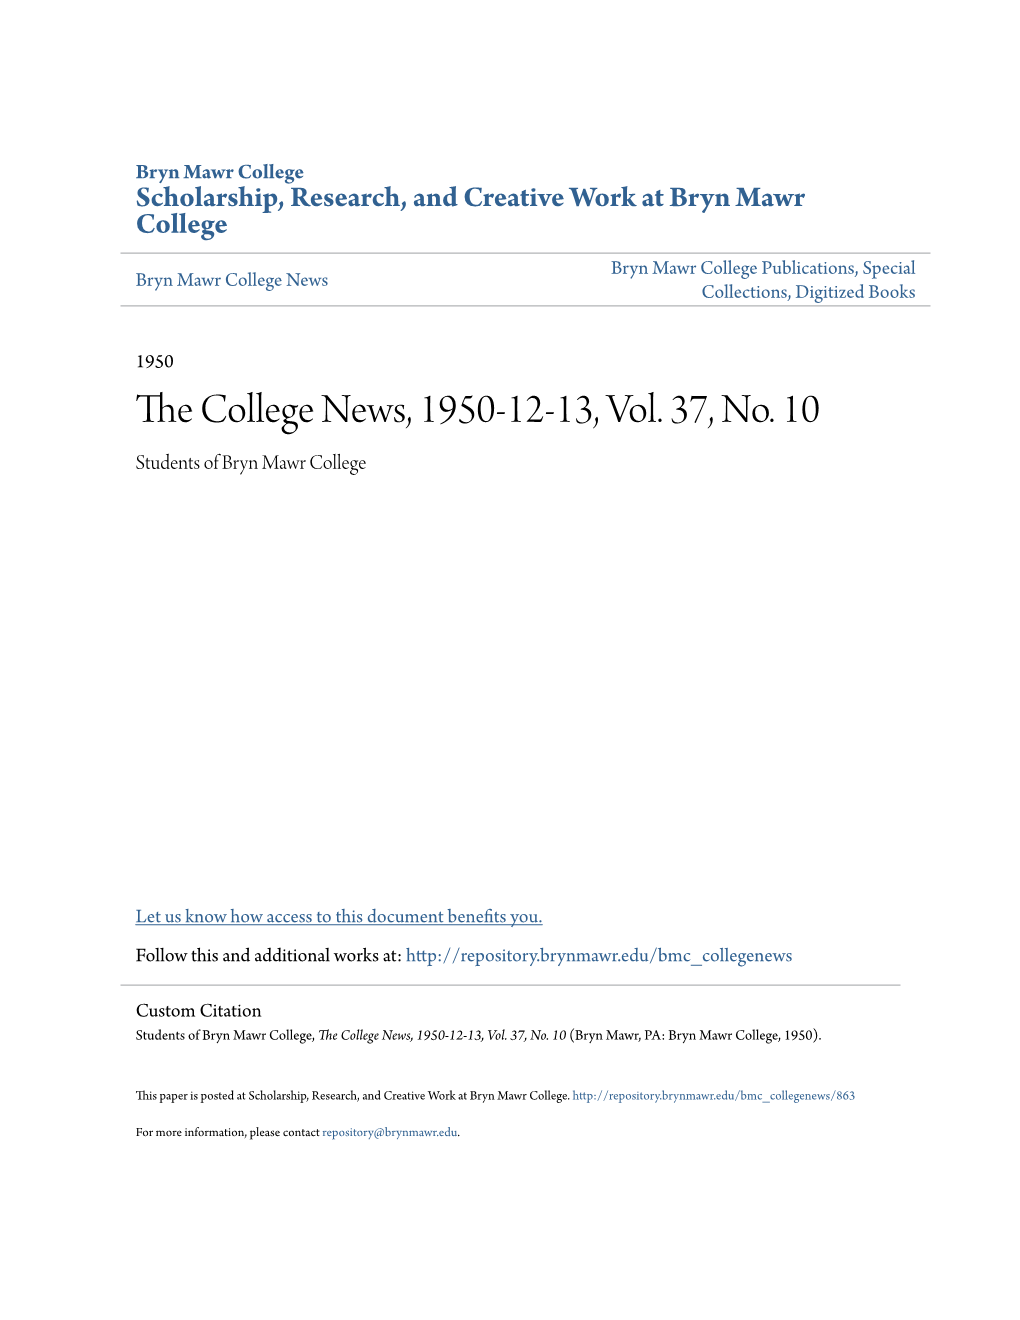 The College News, 1950-12-13, Vol. 37, No. 10 (Bryn Mawr, PA: Bryn Mawr College, 1950)